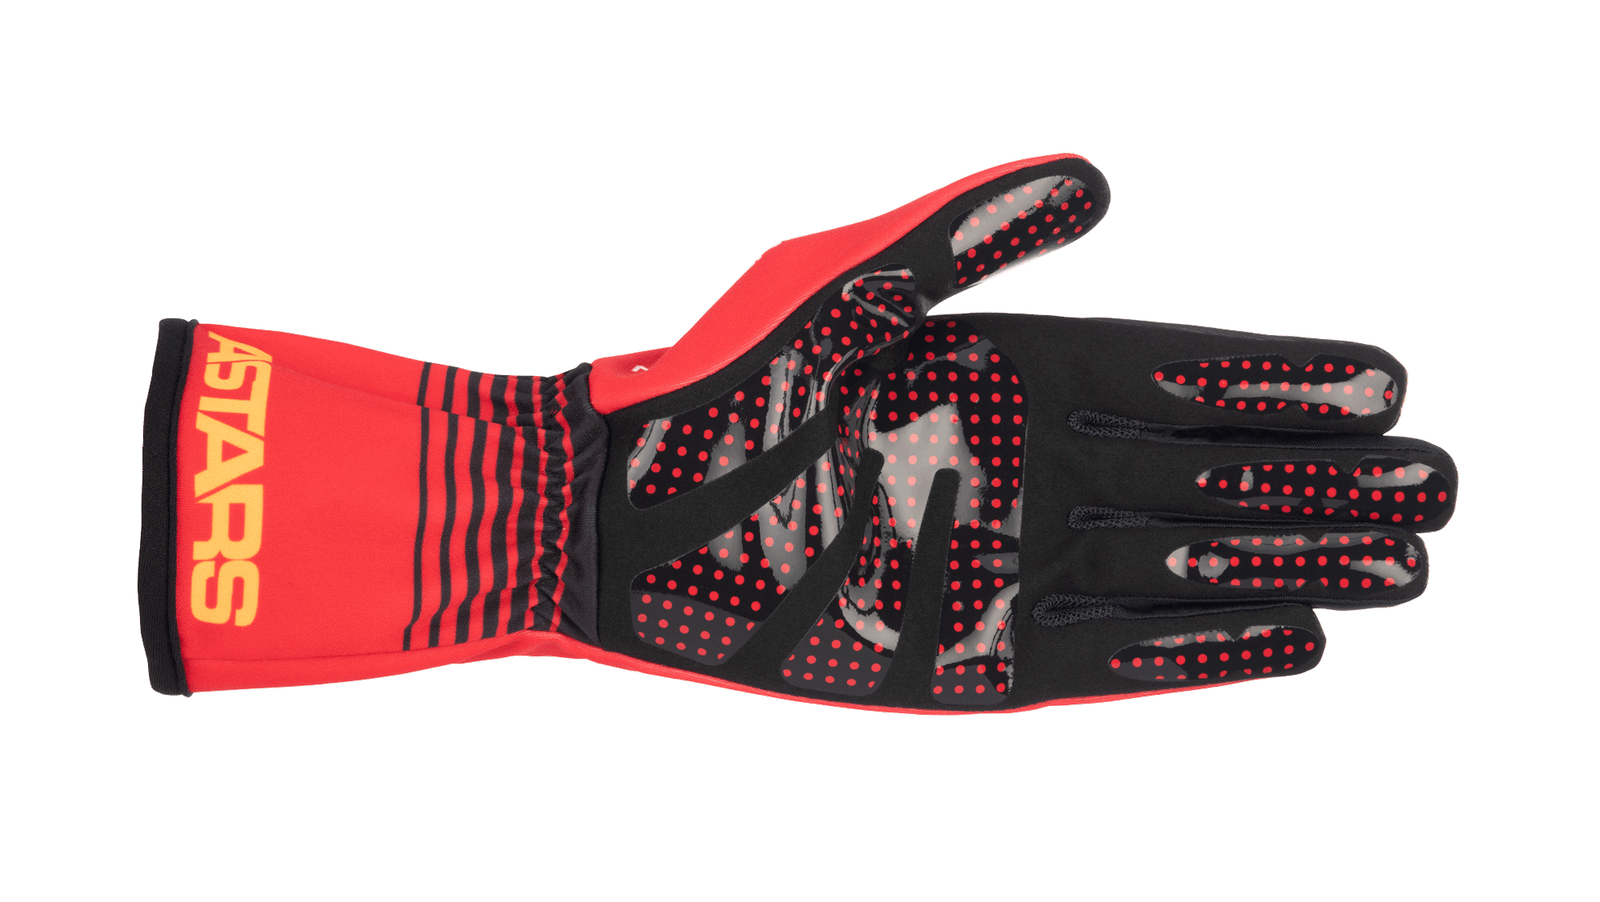 Youth Tech-1 K Race S V2 Future Gloves